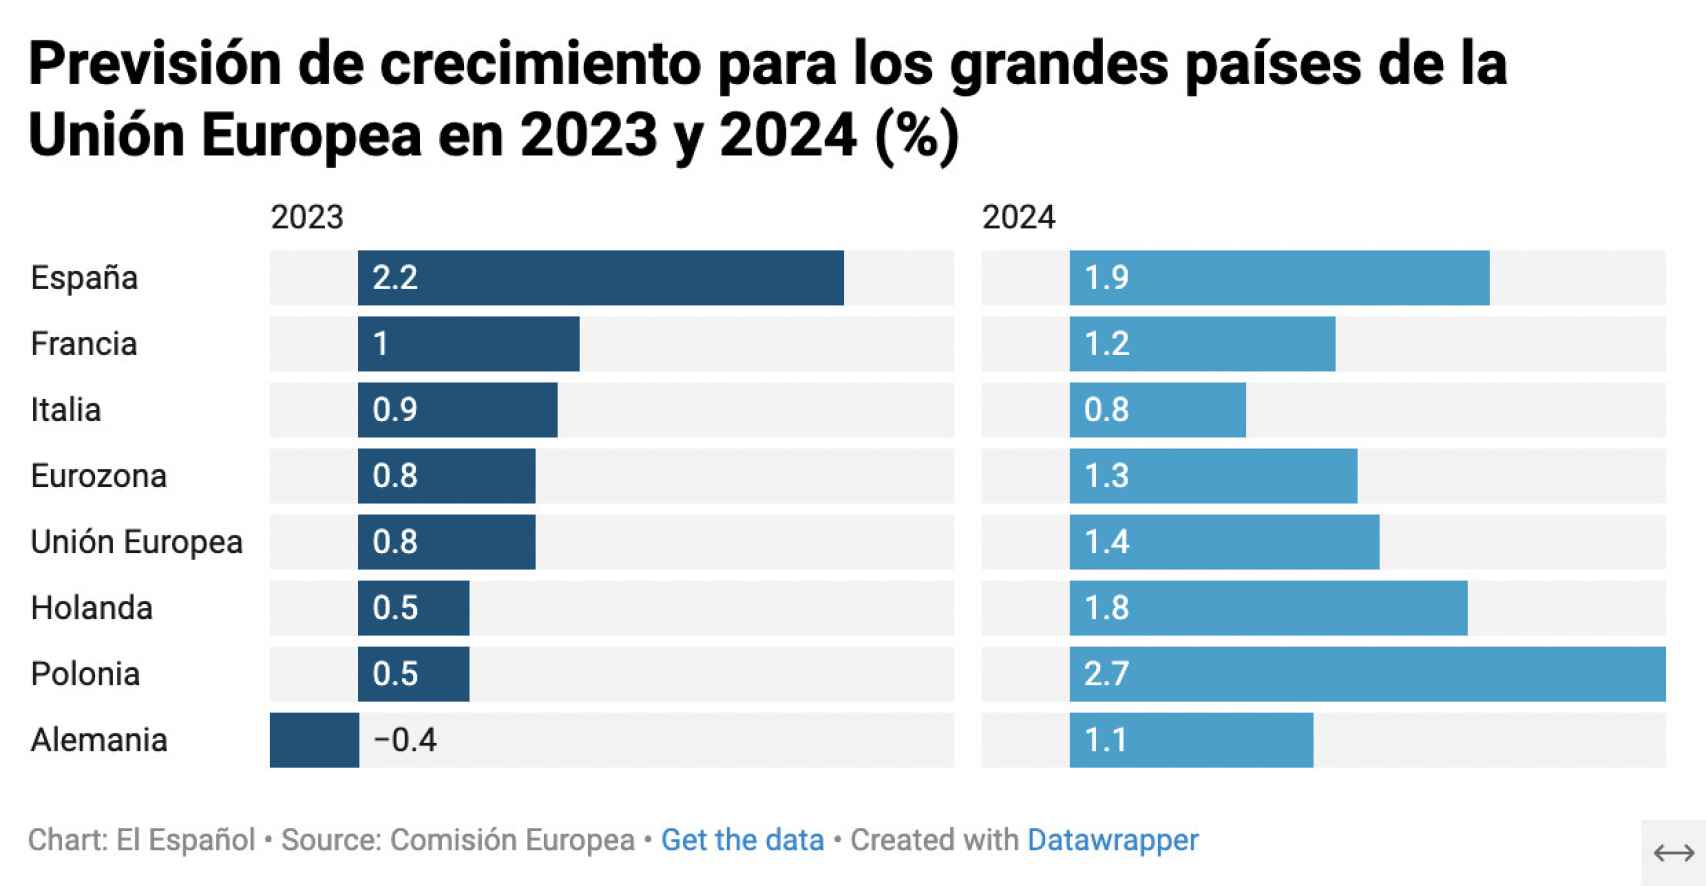 Previsión de crecimiento para los grandes países de la UE en 2023 y 2024